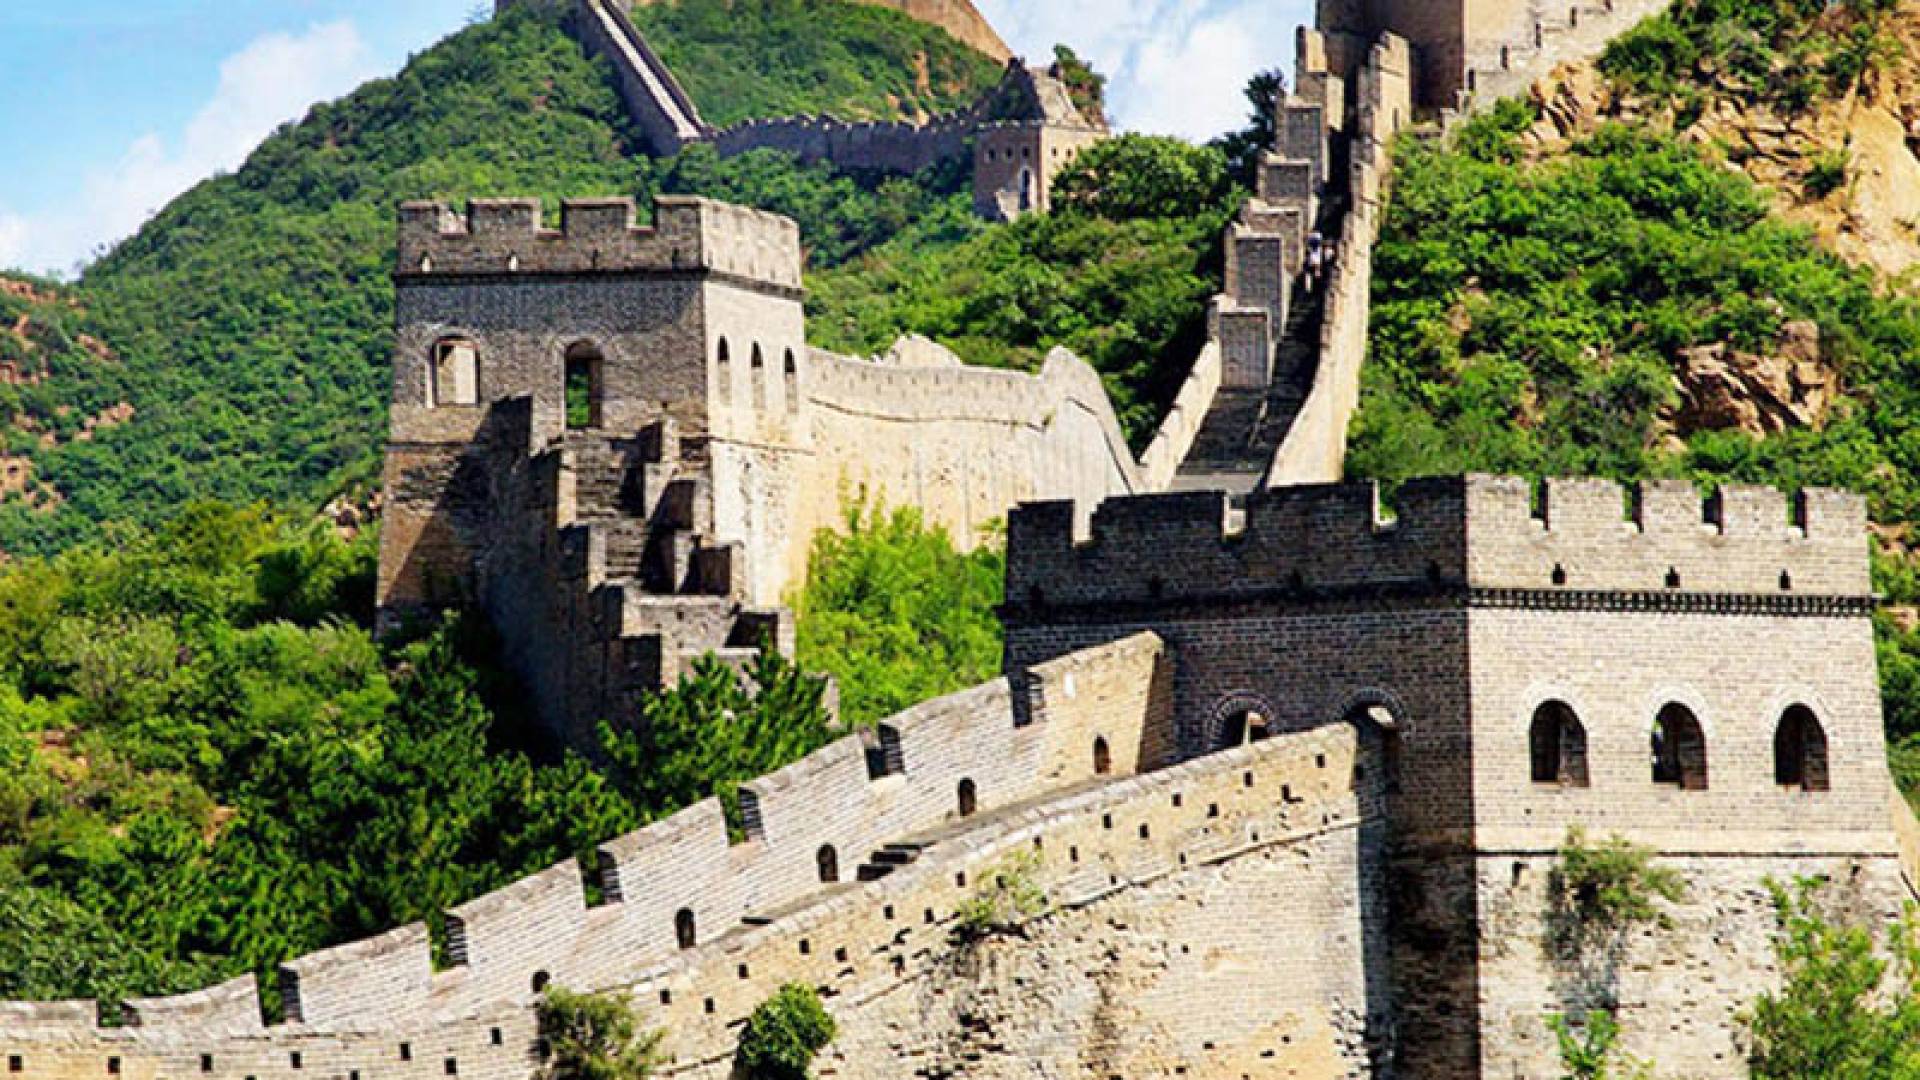 ВЕЛИКАЯ КИТАЙСКАЯ СТЕНА, Великая Китайская Стена